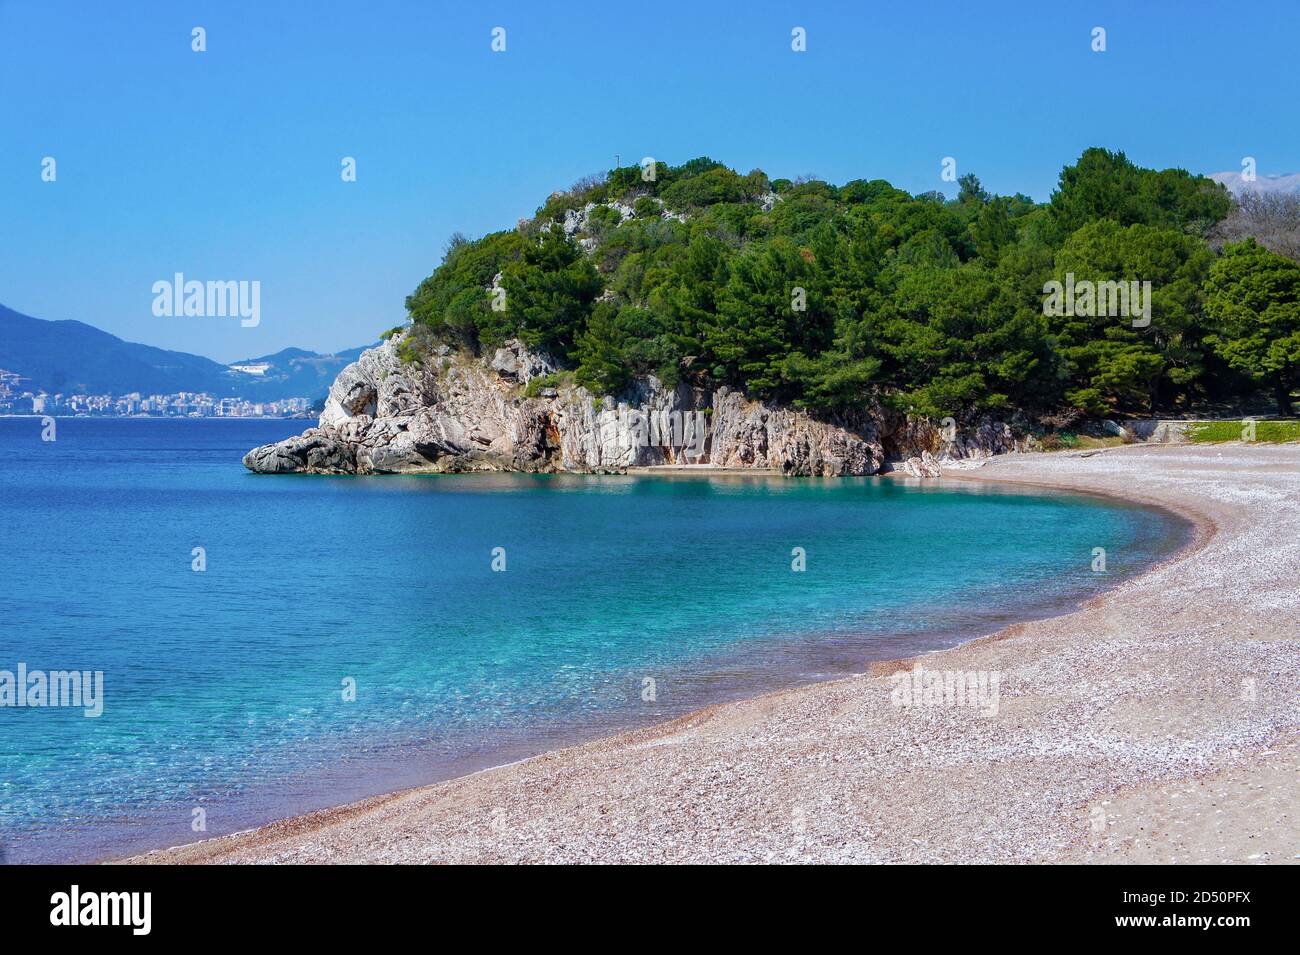 Mar Mediterráneo azul, playa con pequeñas guijarros de naranja, rocas con pinos verdes. Foto de stock